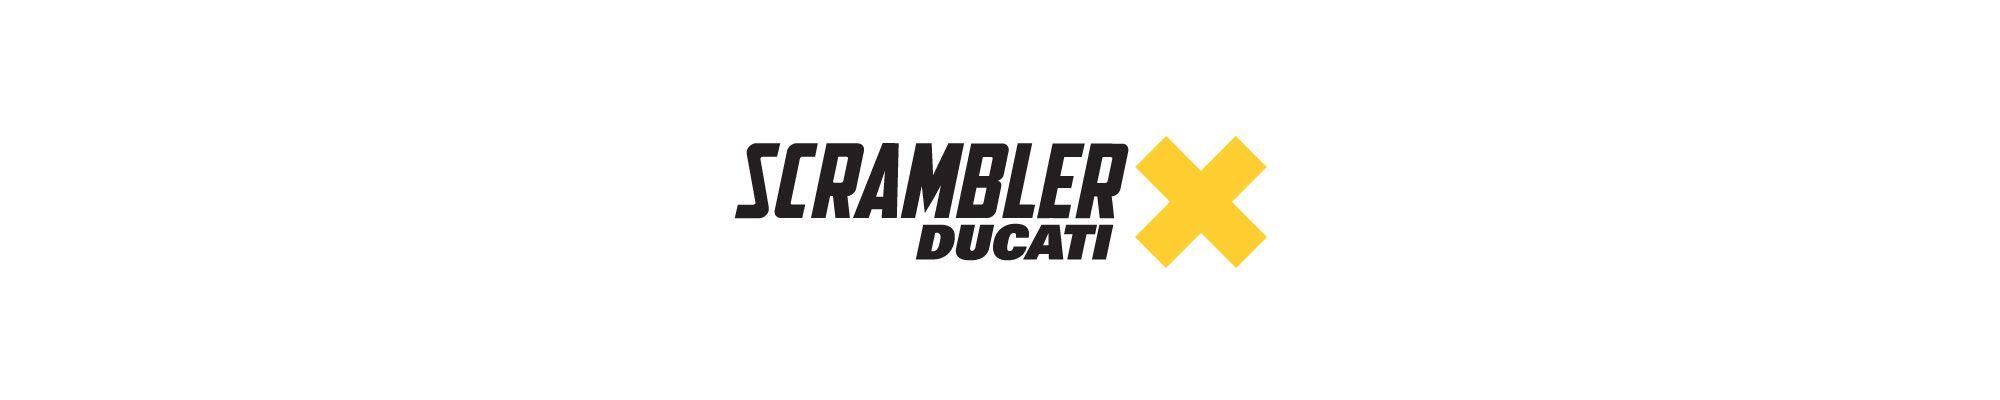 Sled Logo - Scrambler Ducati - Scramblerducati.com